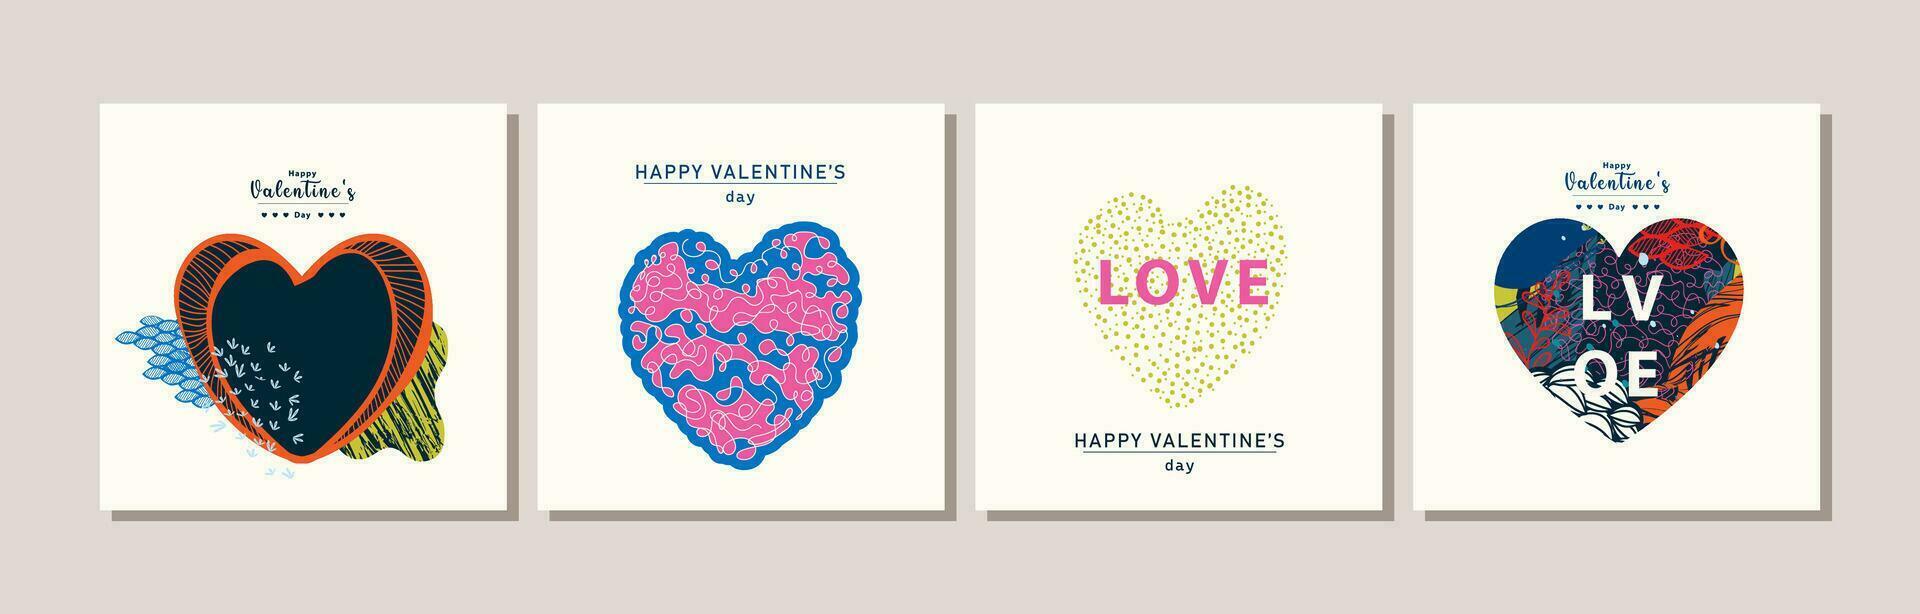 elegante contento San Valentín día tarjeta colección vector